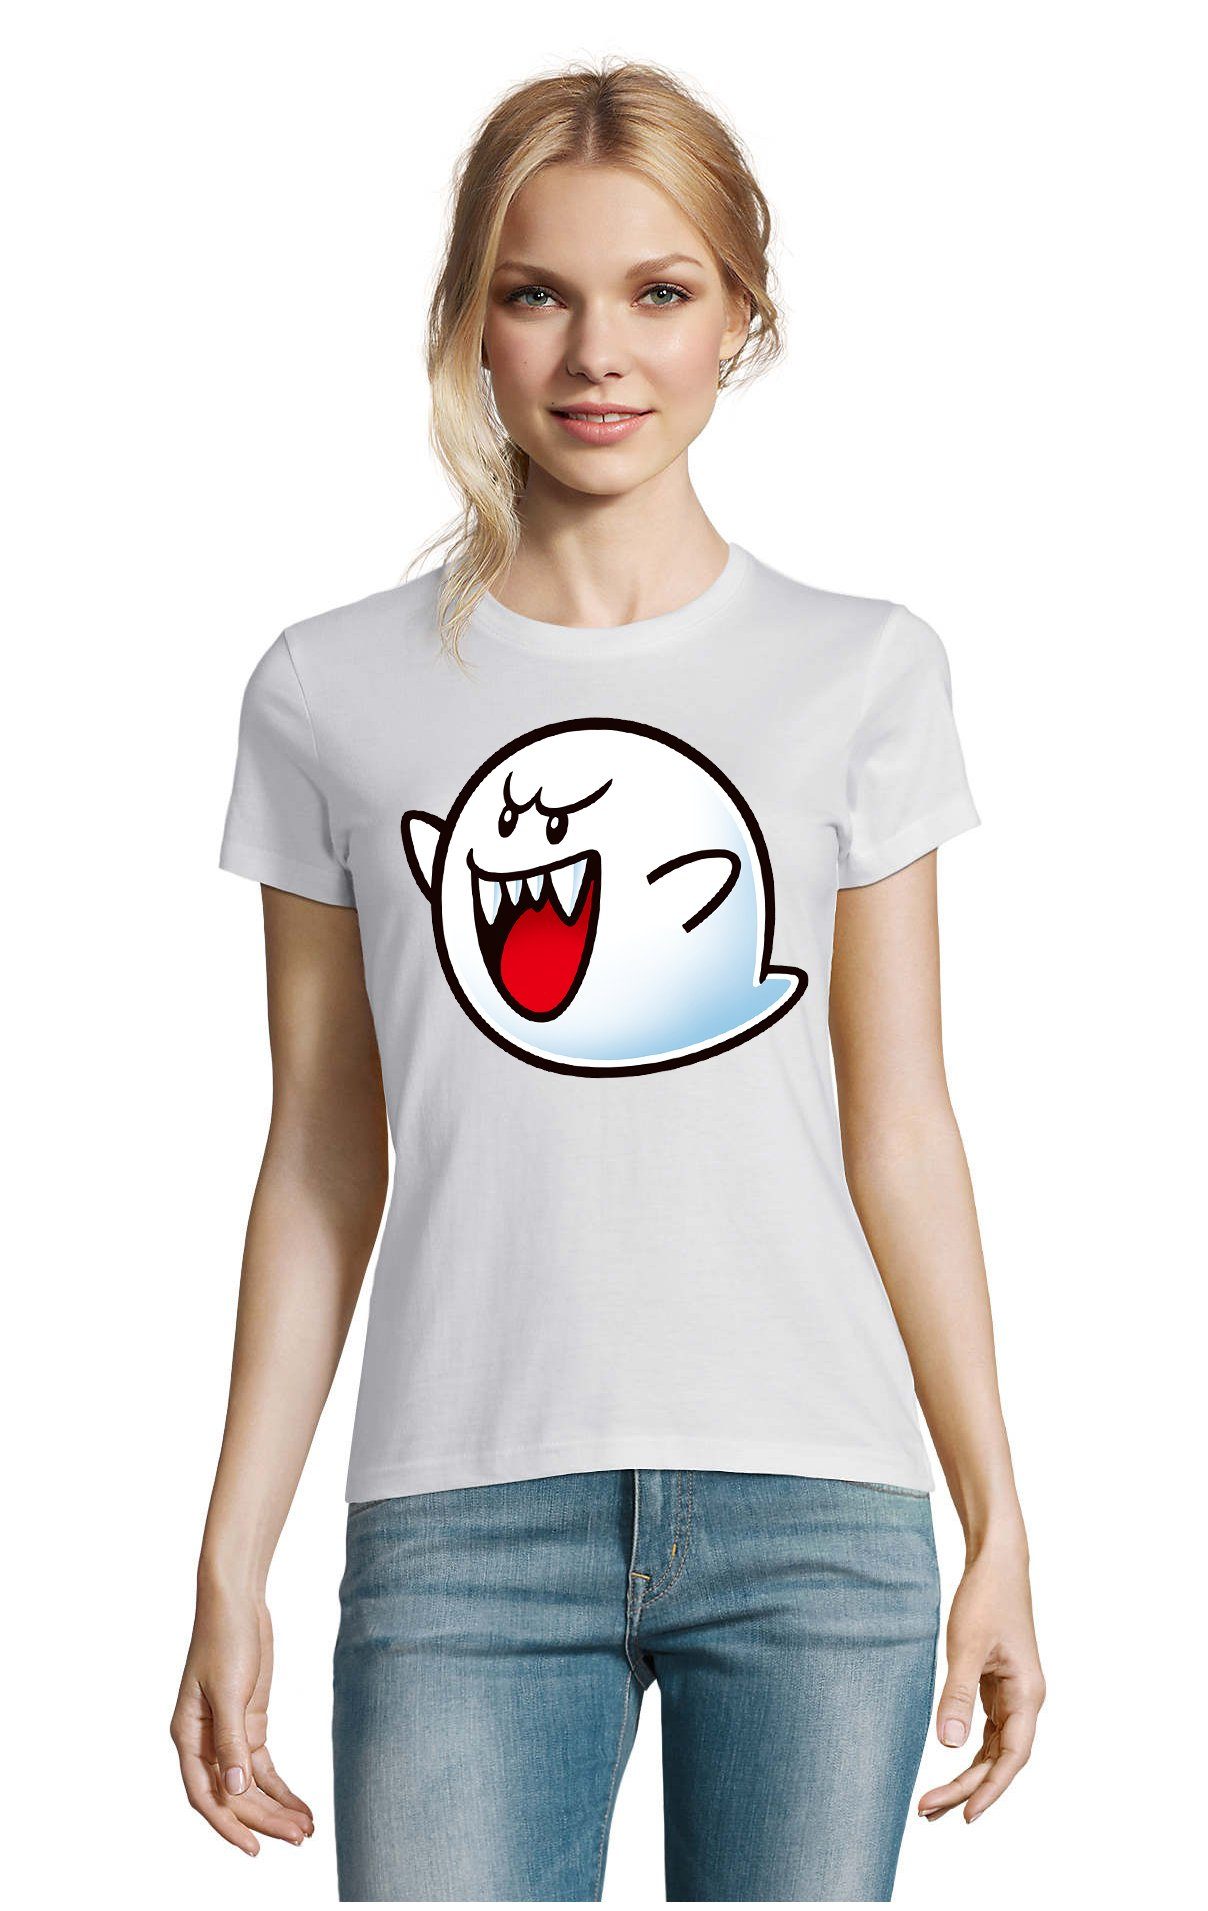 Blondie & Brownie T-Shirt Damen Konsole Geist Weiss Super Boo Gespenst Mario Nintendo